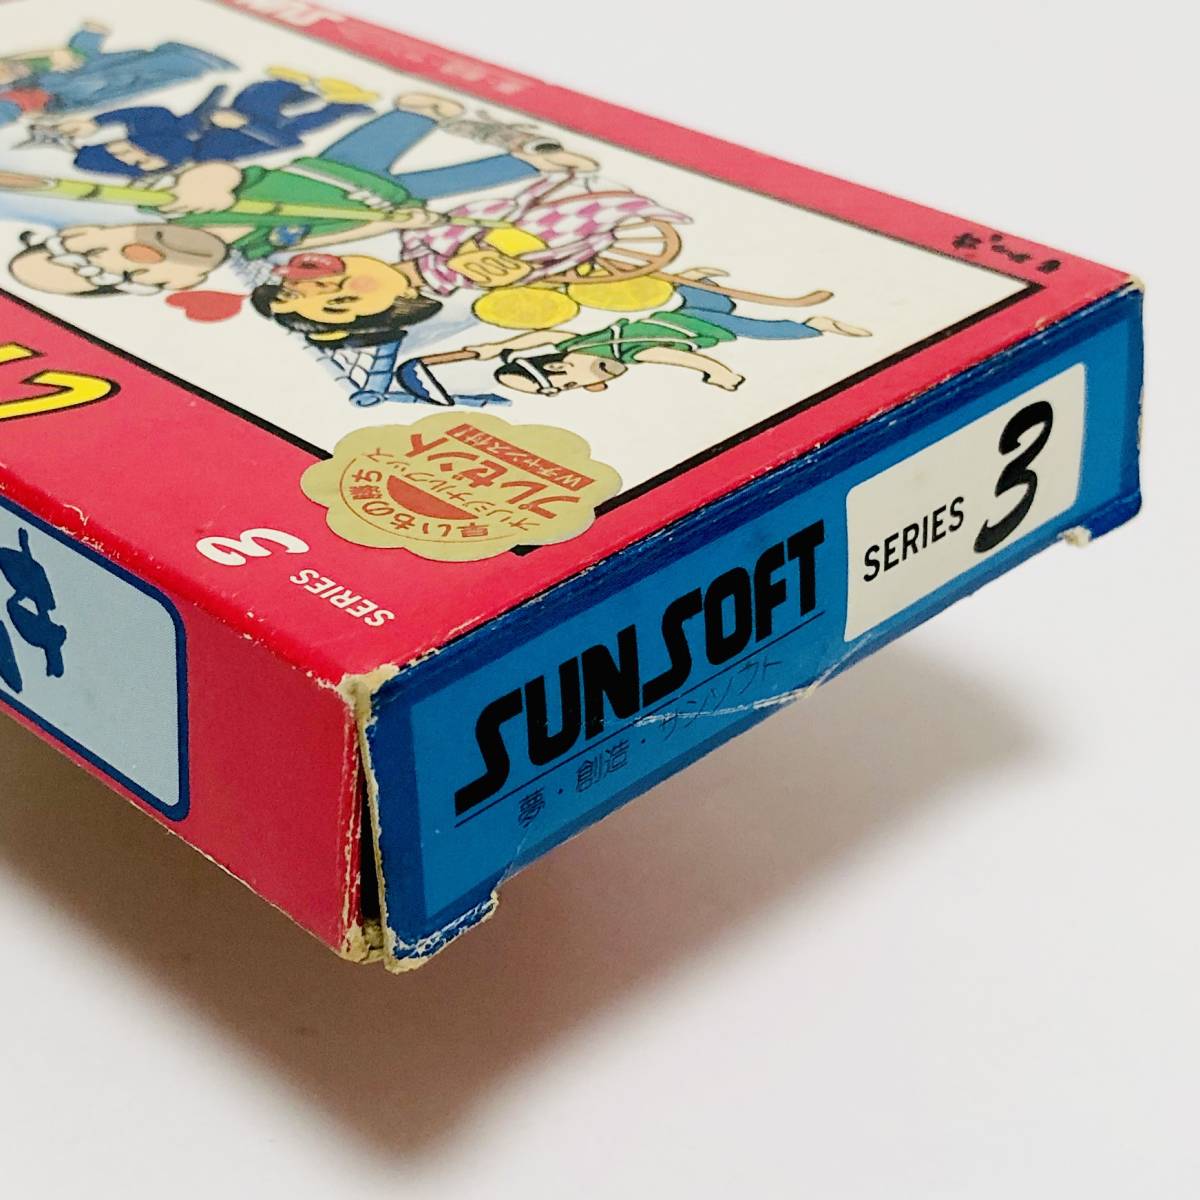 【送料無料】 ファミコン いっき 箱説付き 痛みあり サンソフト サン電子 レトロゲーム Nintendo Famicom Ikki CIB Sunsoft_画像6